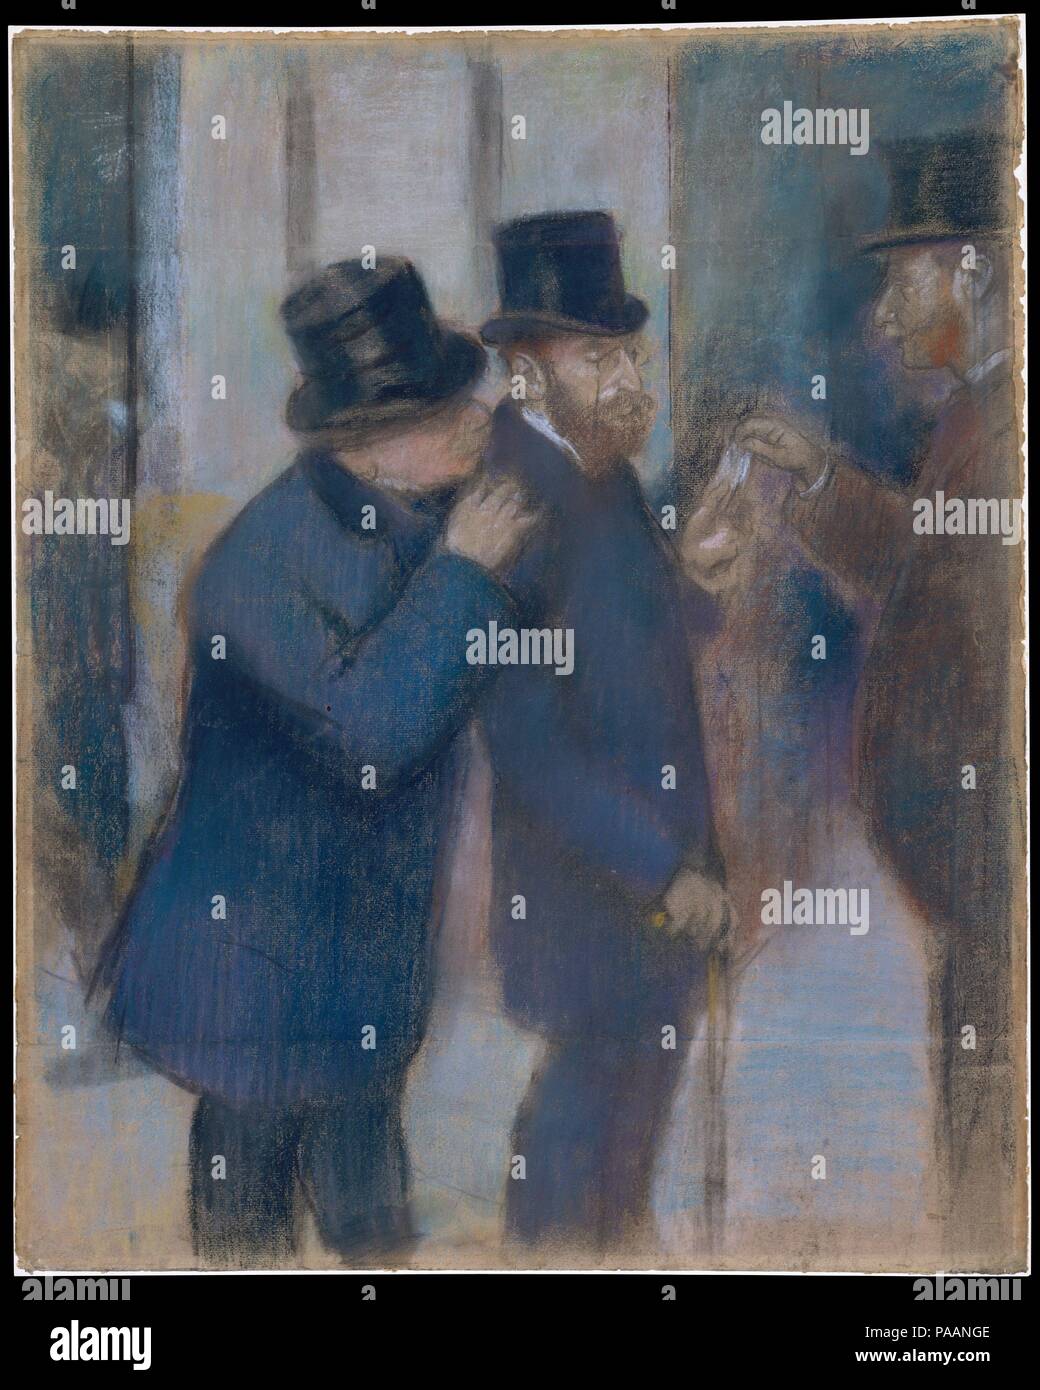 Ritratti in Borsa. Artista: Edgar Degas (francese, Parigi Parigi 1834-1917). Dimensioni: 28 3/8 x 22 7/8 in. (72,1 x 58,1 cm). Data: ca. 1878-79. Questo studio per un dipinto ad olio da Degas di 1878-79 (Musée d'Orsay, Parigi) raffigura il finanziere e collezionista Ernest Maggio (1845-1925) sotto il portico della borsa di Parigi. Al momento, maggio era nei suoi primi anni trenta e cominciando a espandere la sua acquisizioni dal vecchio maestro e del xviii secolo le immagini di opere di Degas, Manet, e i loro colleghi. Museo: Metropolitan Museum of Art di New York, Stati Uniti d'America. Foto Stock